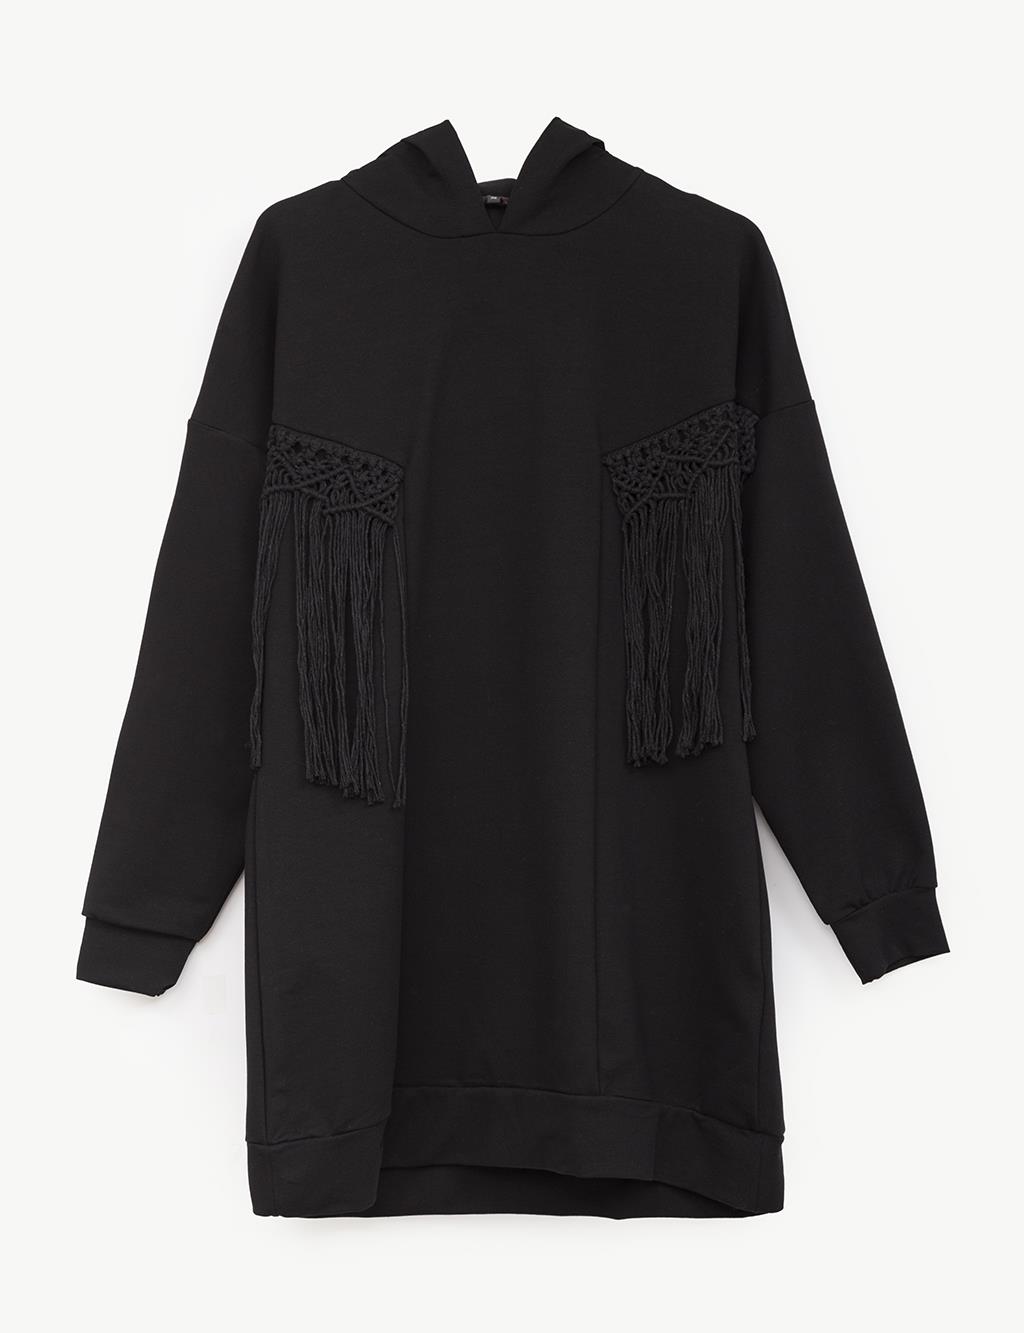 Knit Detailed Hoodie Sweatshirt Black